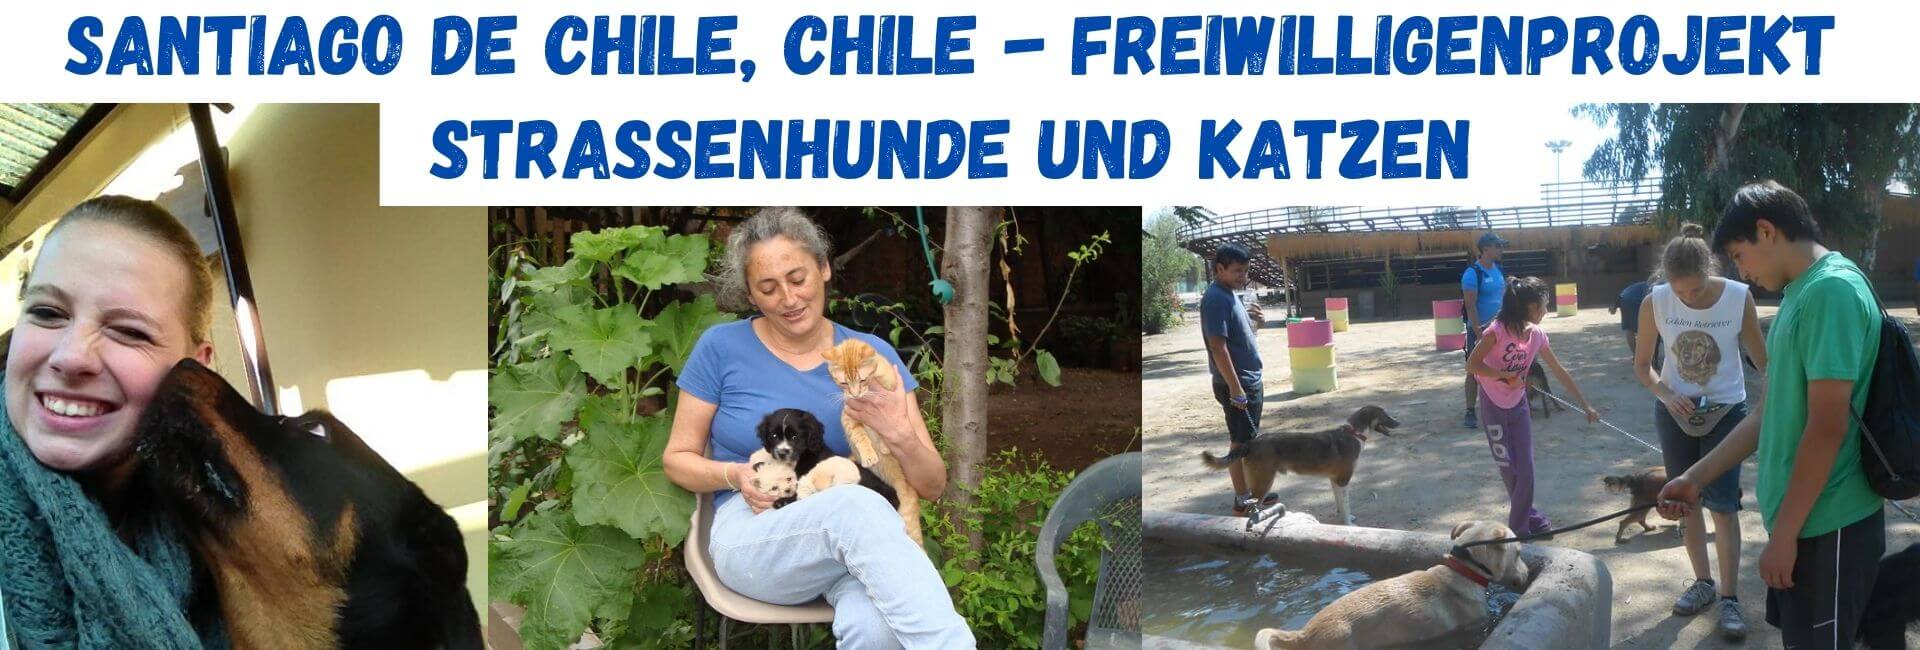 Teaser, Chile, Strassenhunde